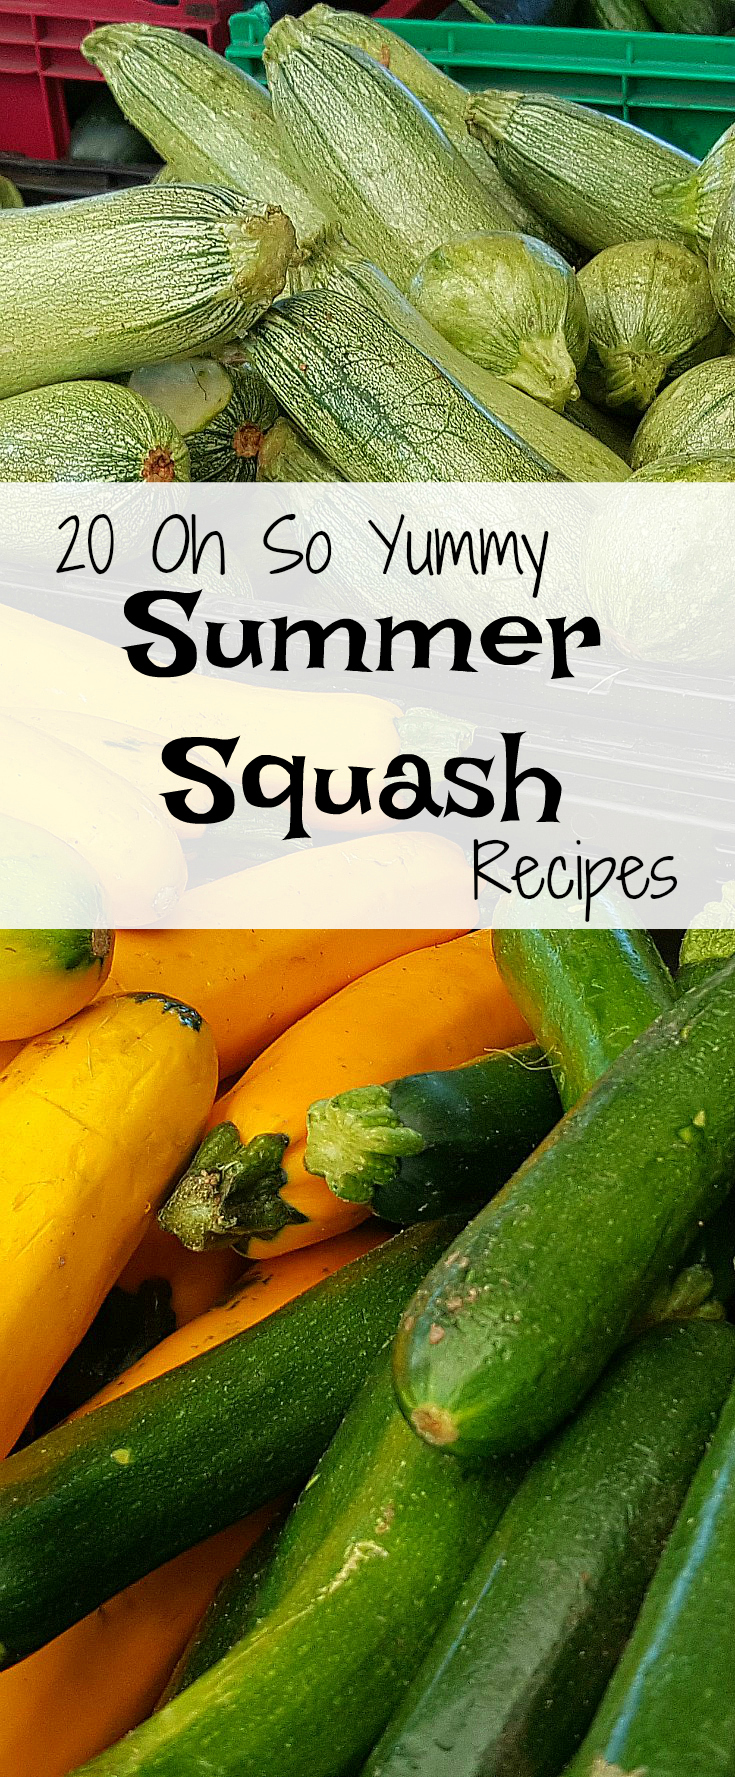 20 Oh So Yummy Summer Squash Recipes